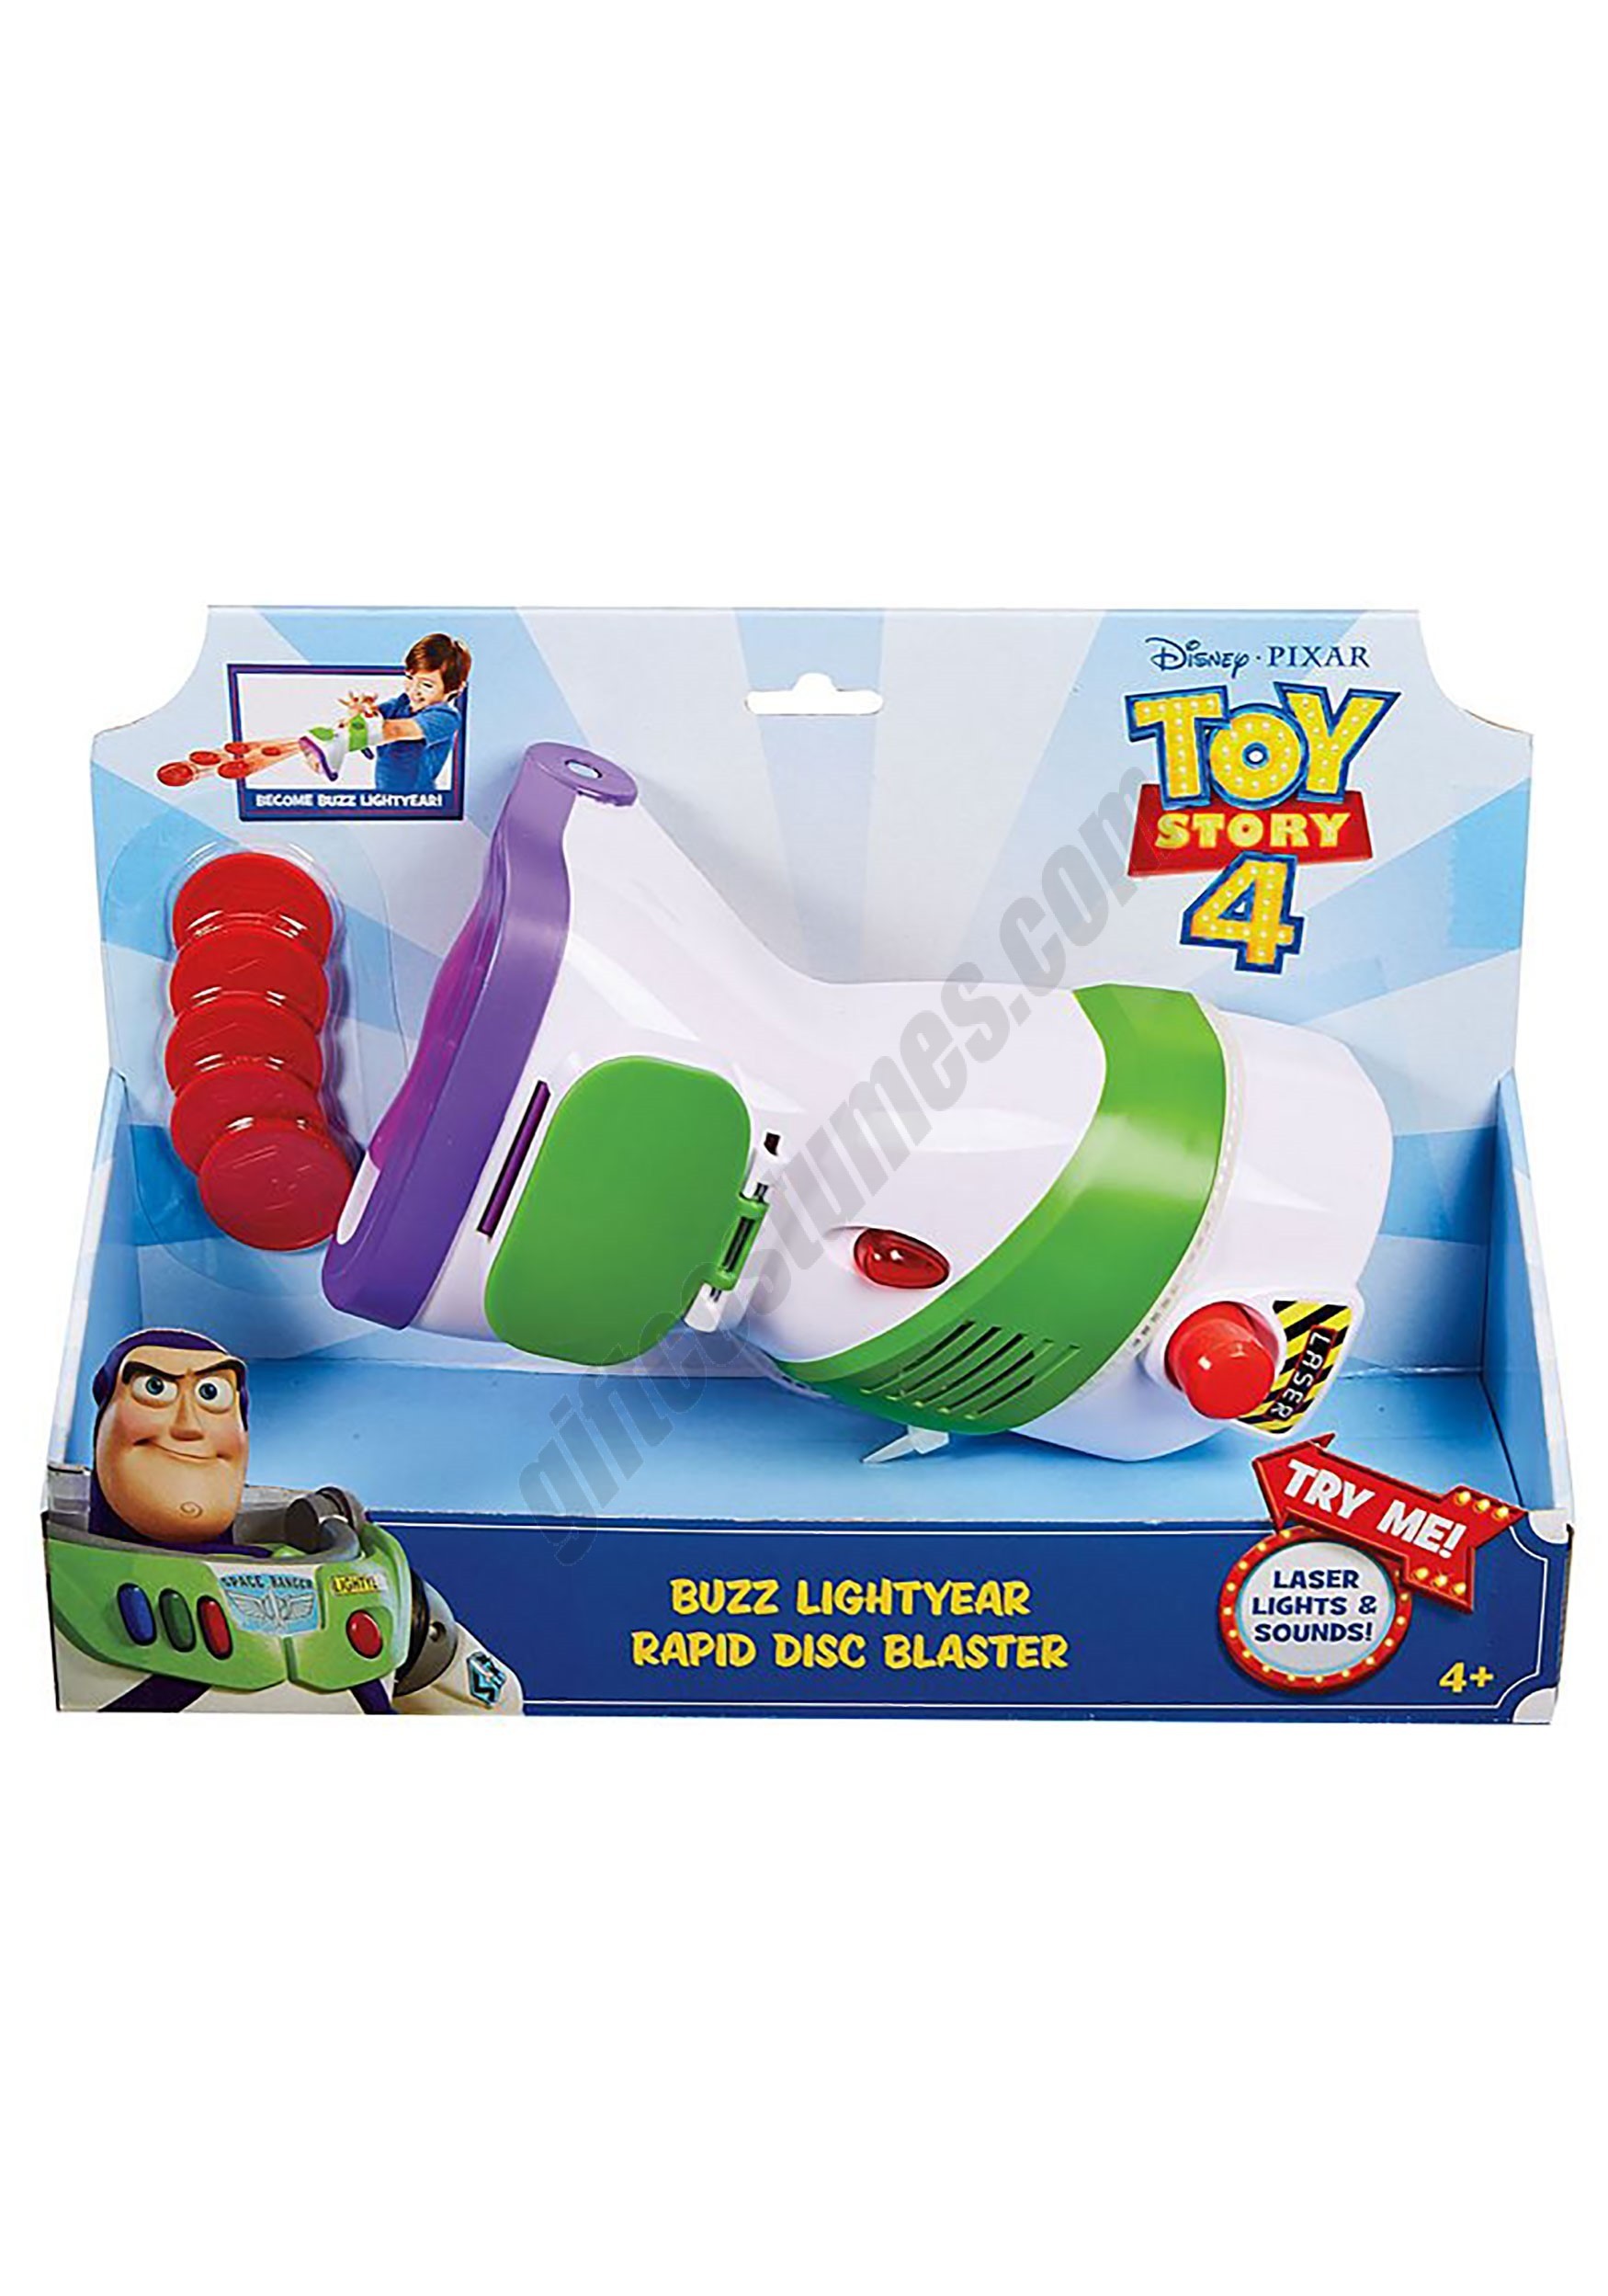 Toy Story 4 Buzz Lightyear Disc Blaster Promotions - Toy Story 4 Buzz Lightyear Disc Blaster Promotions